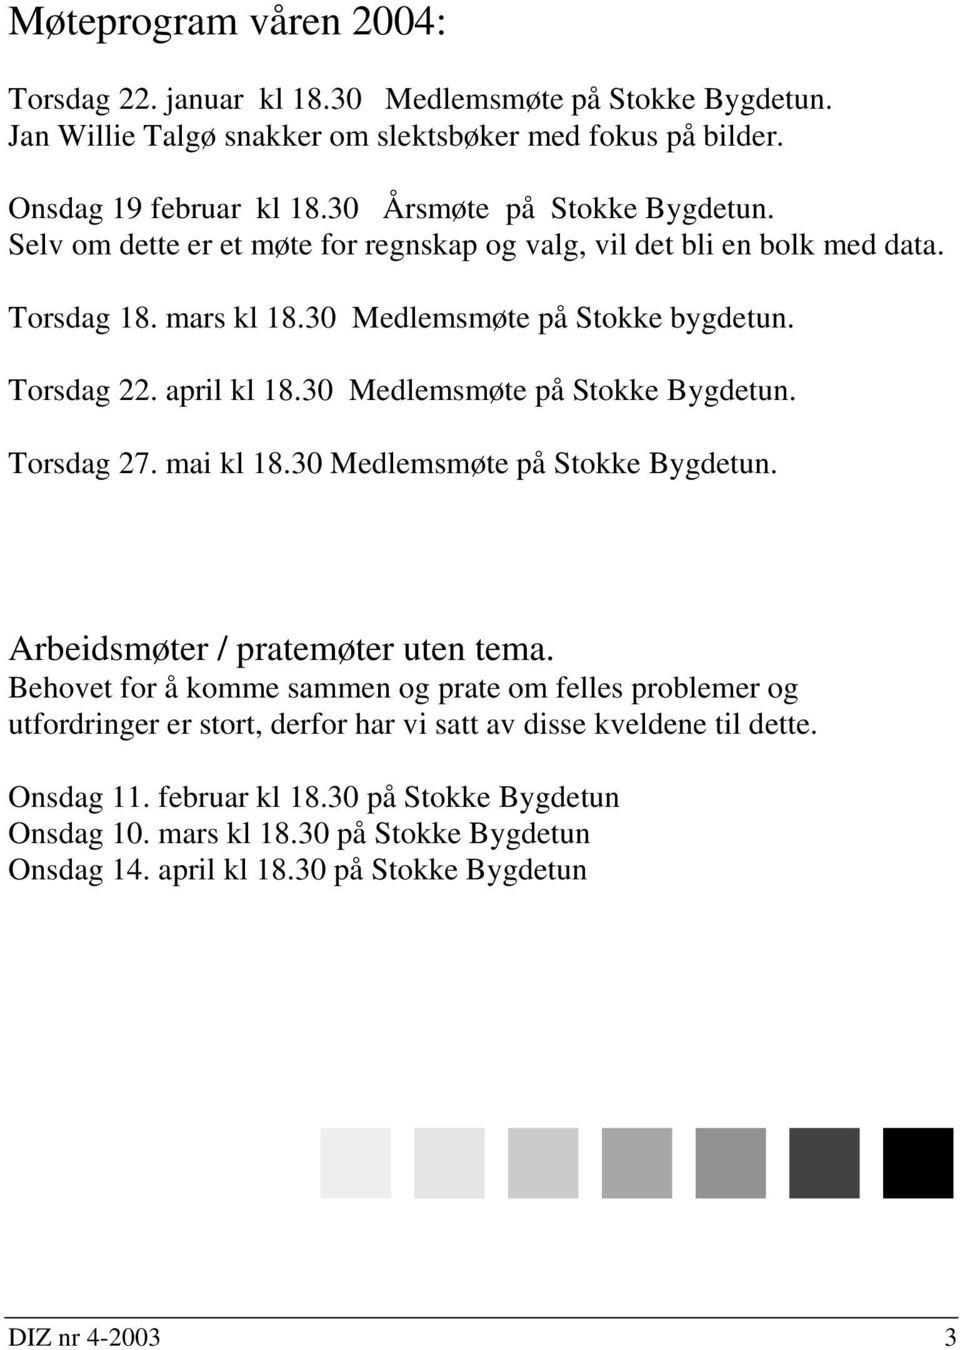 30 Medlemsmøte på Stokke Bygdetun. Torsdag 27. mai kl 18.30 Medlemsmøte på Stokke Bygdetun. Arbeidsmøter / pratemøter uten tema.